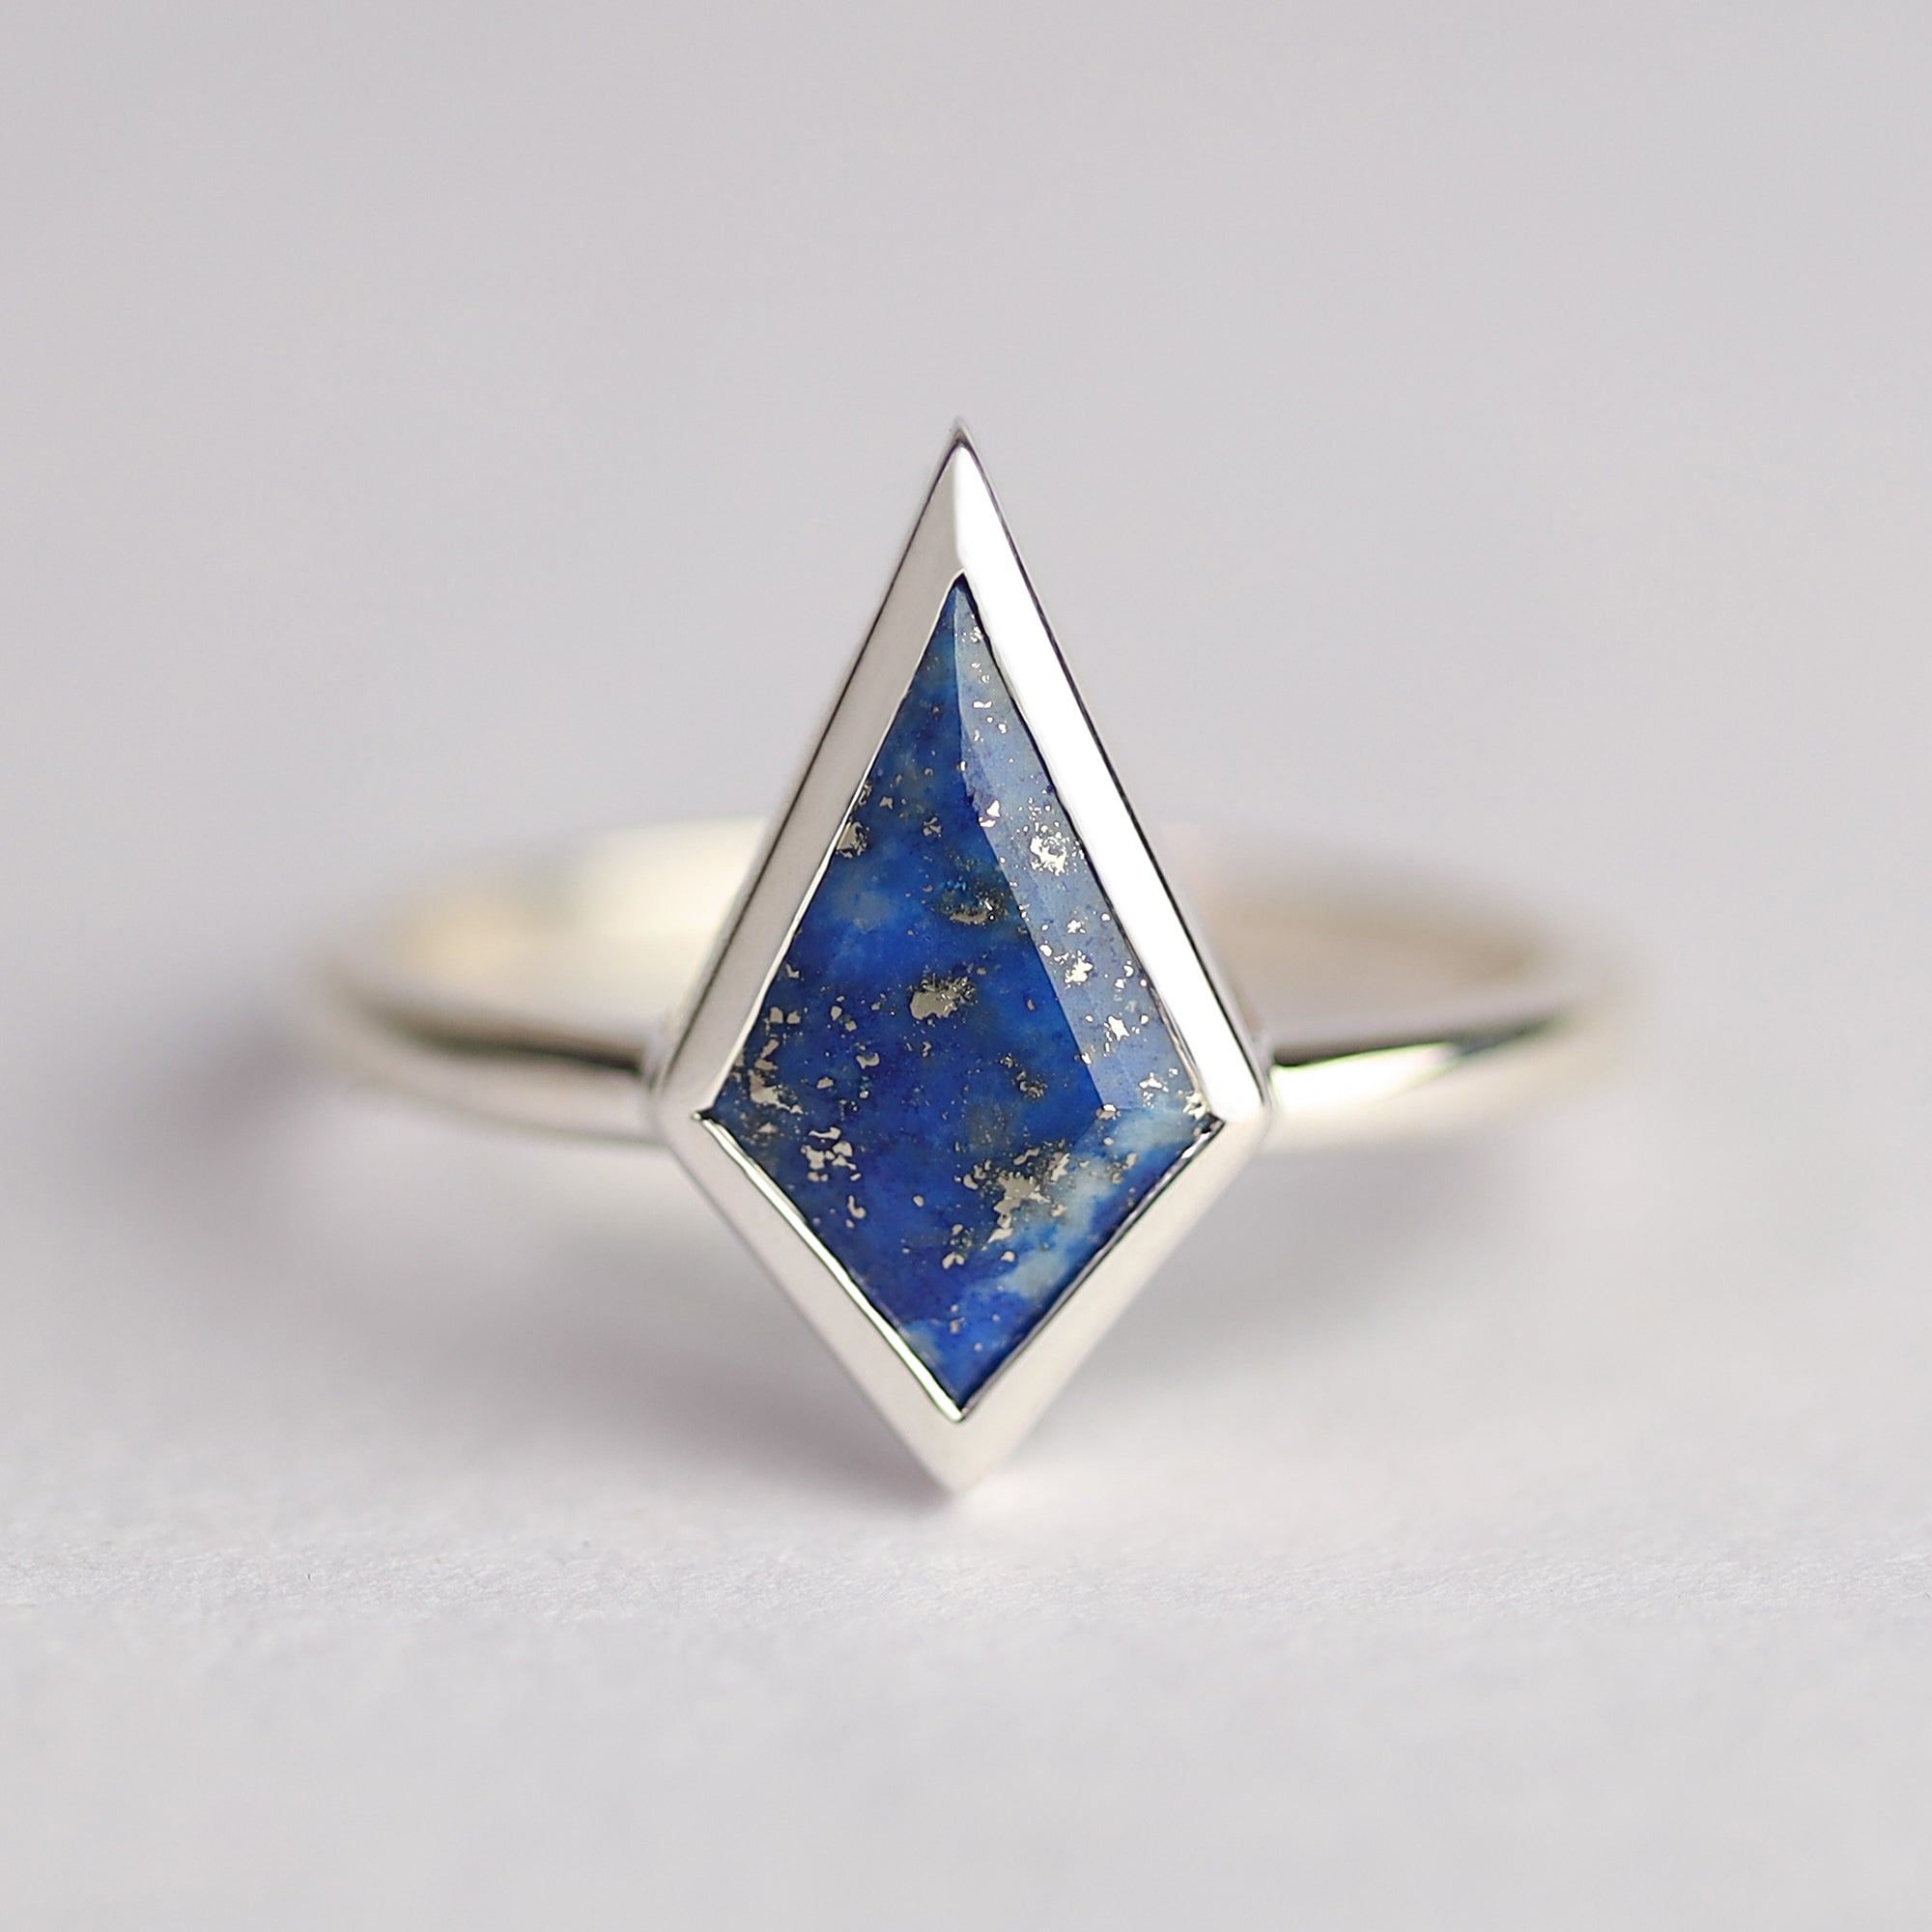 Glenn Lapis Lazuli Kite Ring